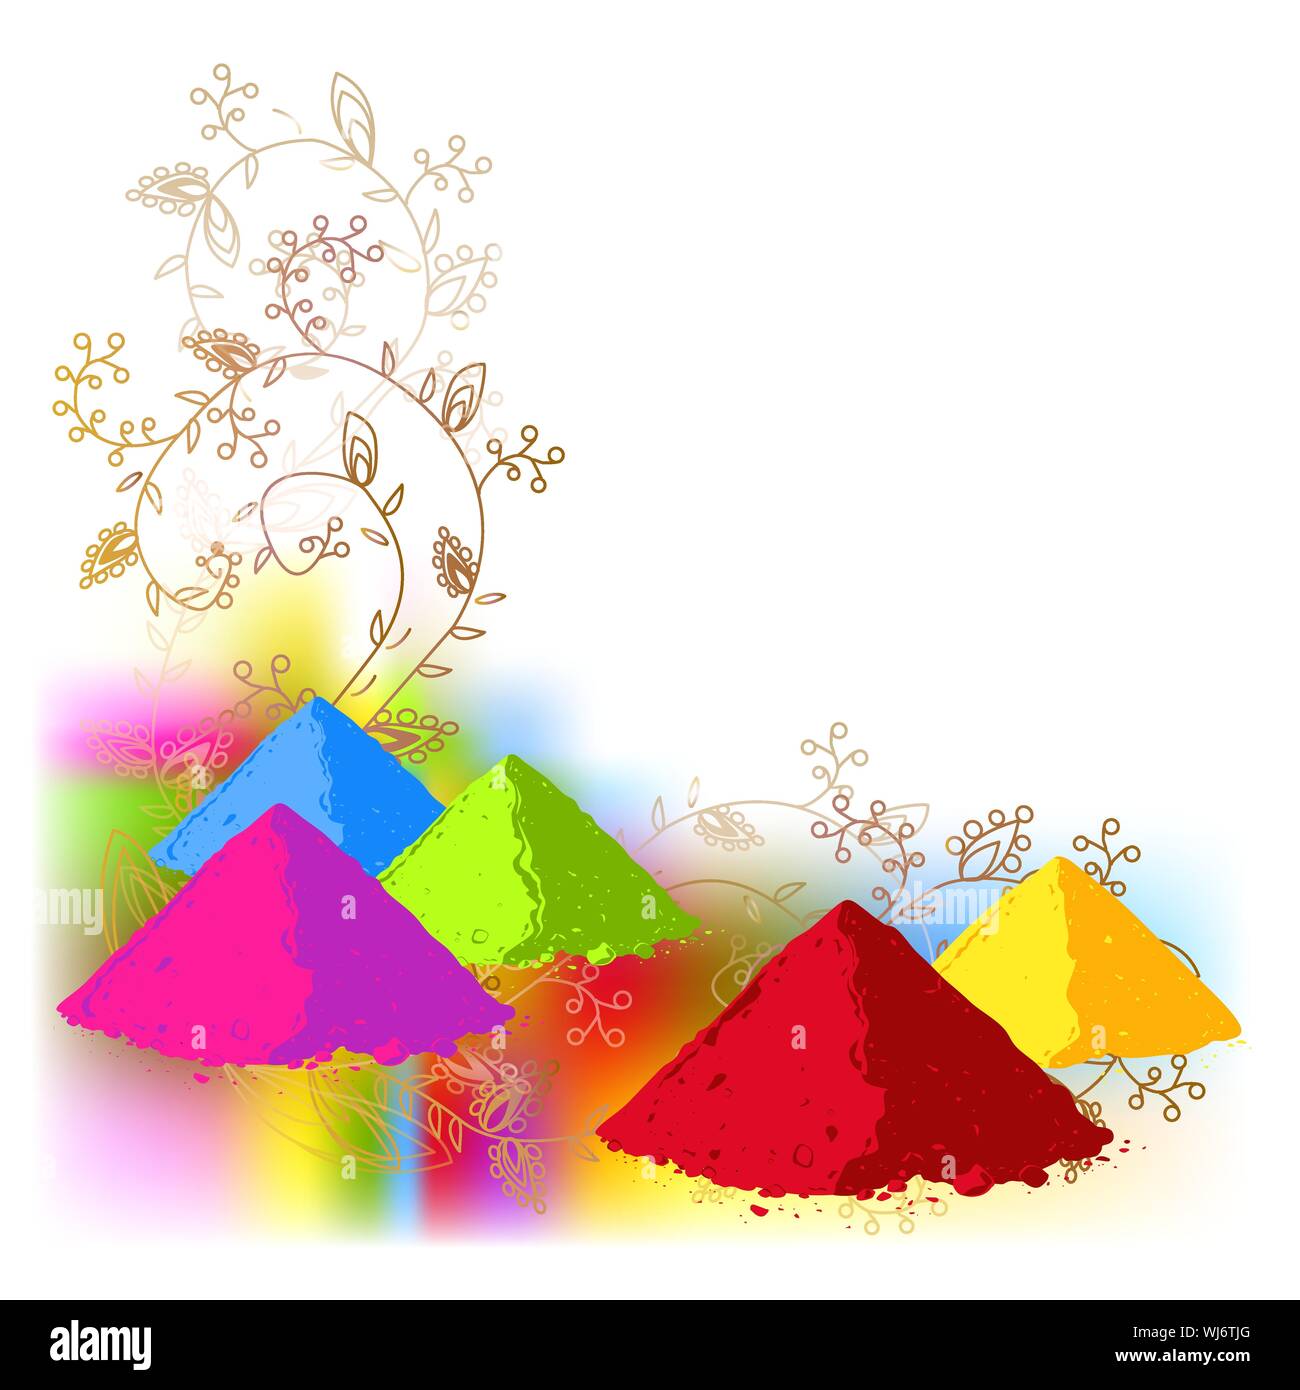 Vektor Poster, Banner oder Flyer Design für Holi Fest Party Feier, indische Festivals. Bunte Farben in Pulverform und abstraktes Ornament Hintergrund. Stock Vektor